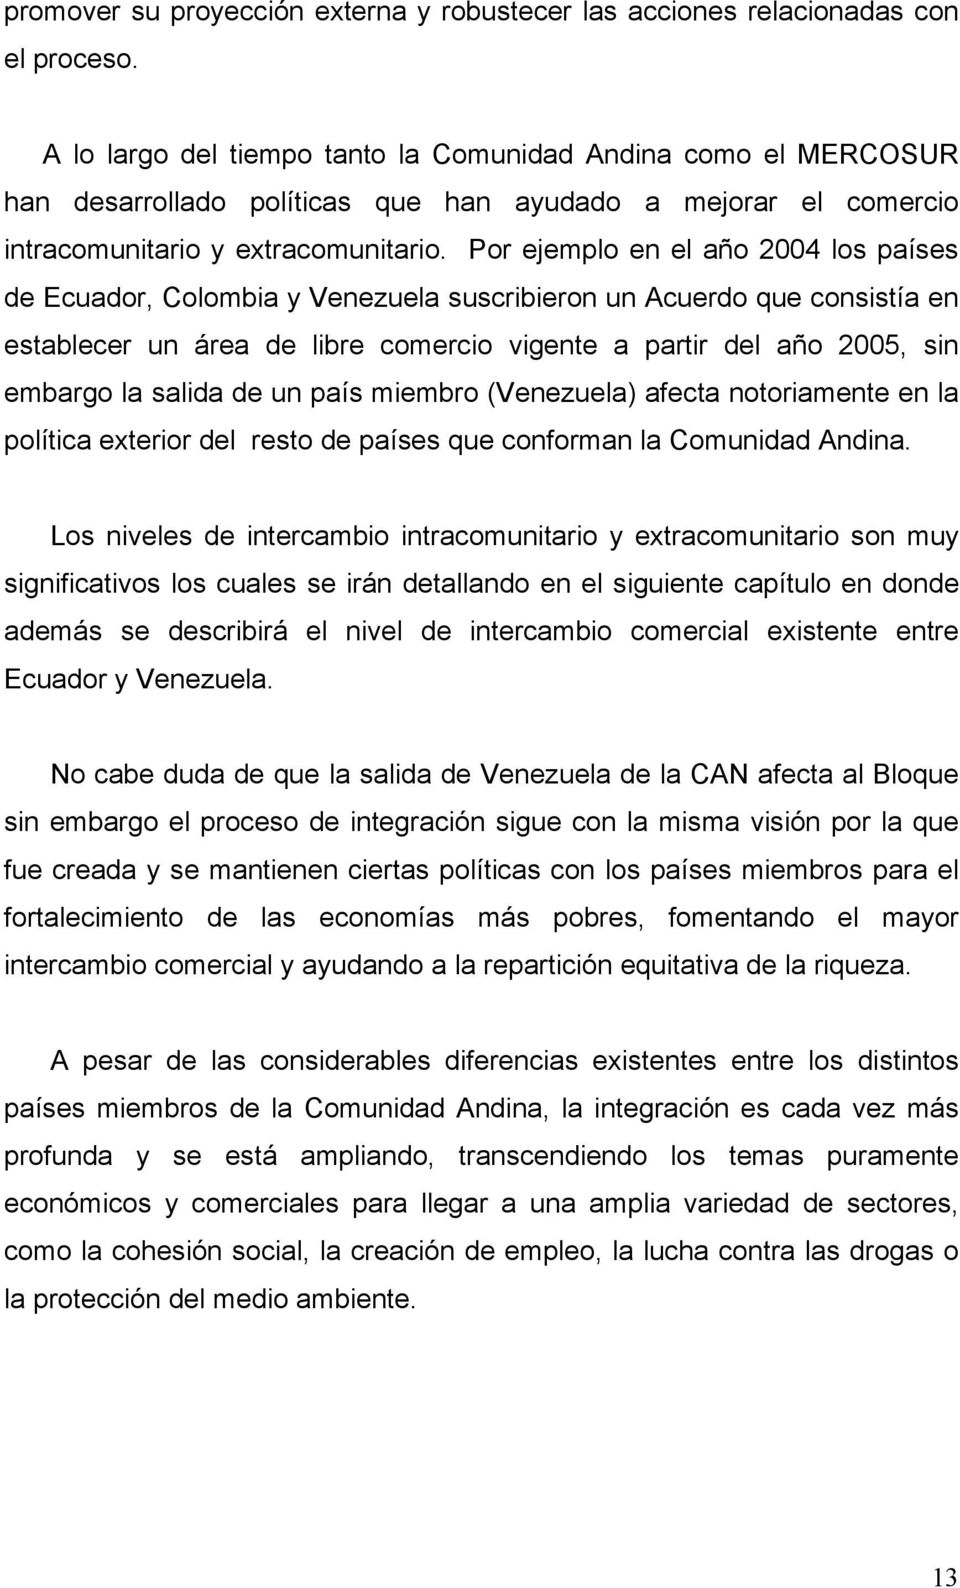 Por ejemplo en el año 2004 los países de Ecuador, Colombia y Venezuela suscribieron un Acuerdo que consistía en establecer un área de libre comercio vigente a partir del año 2005, sin embargo la